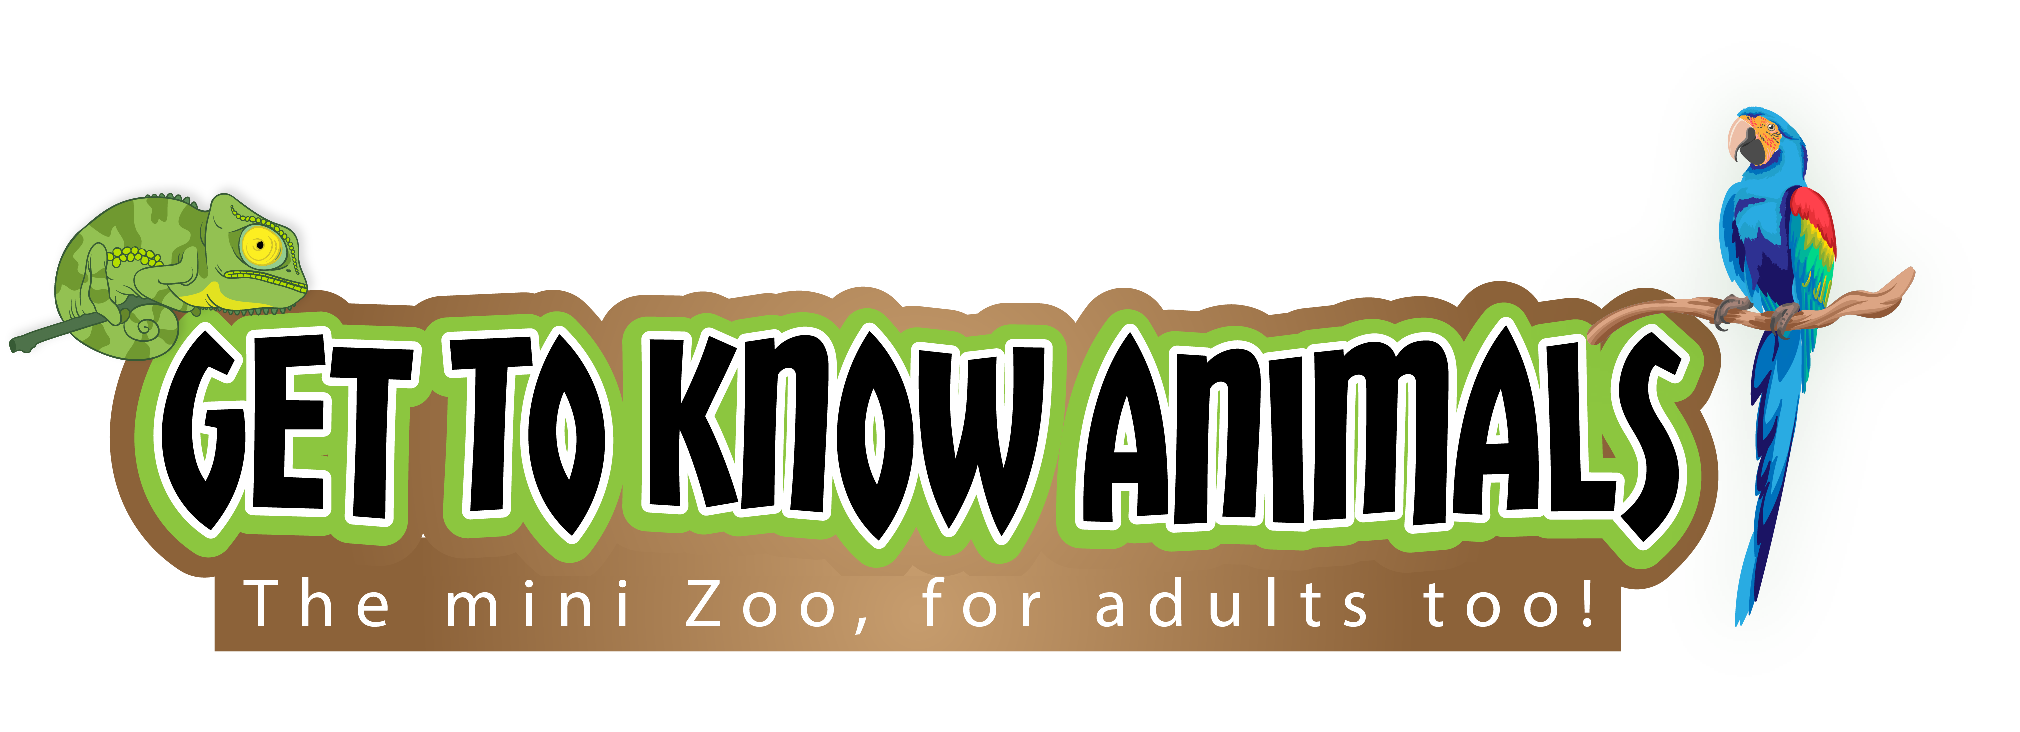 Get to know animals Ltd